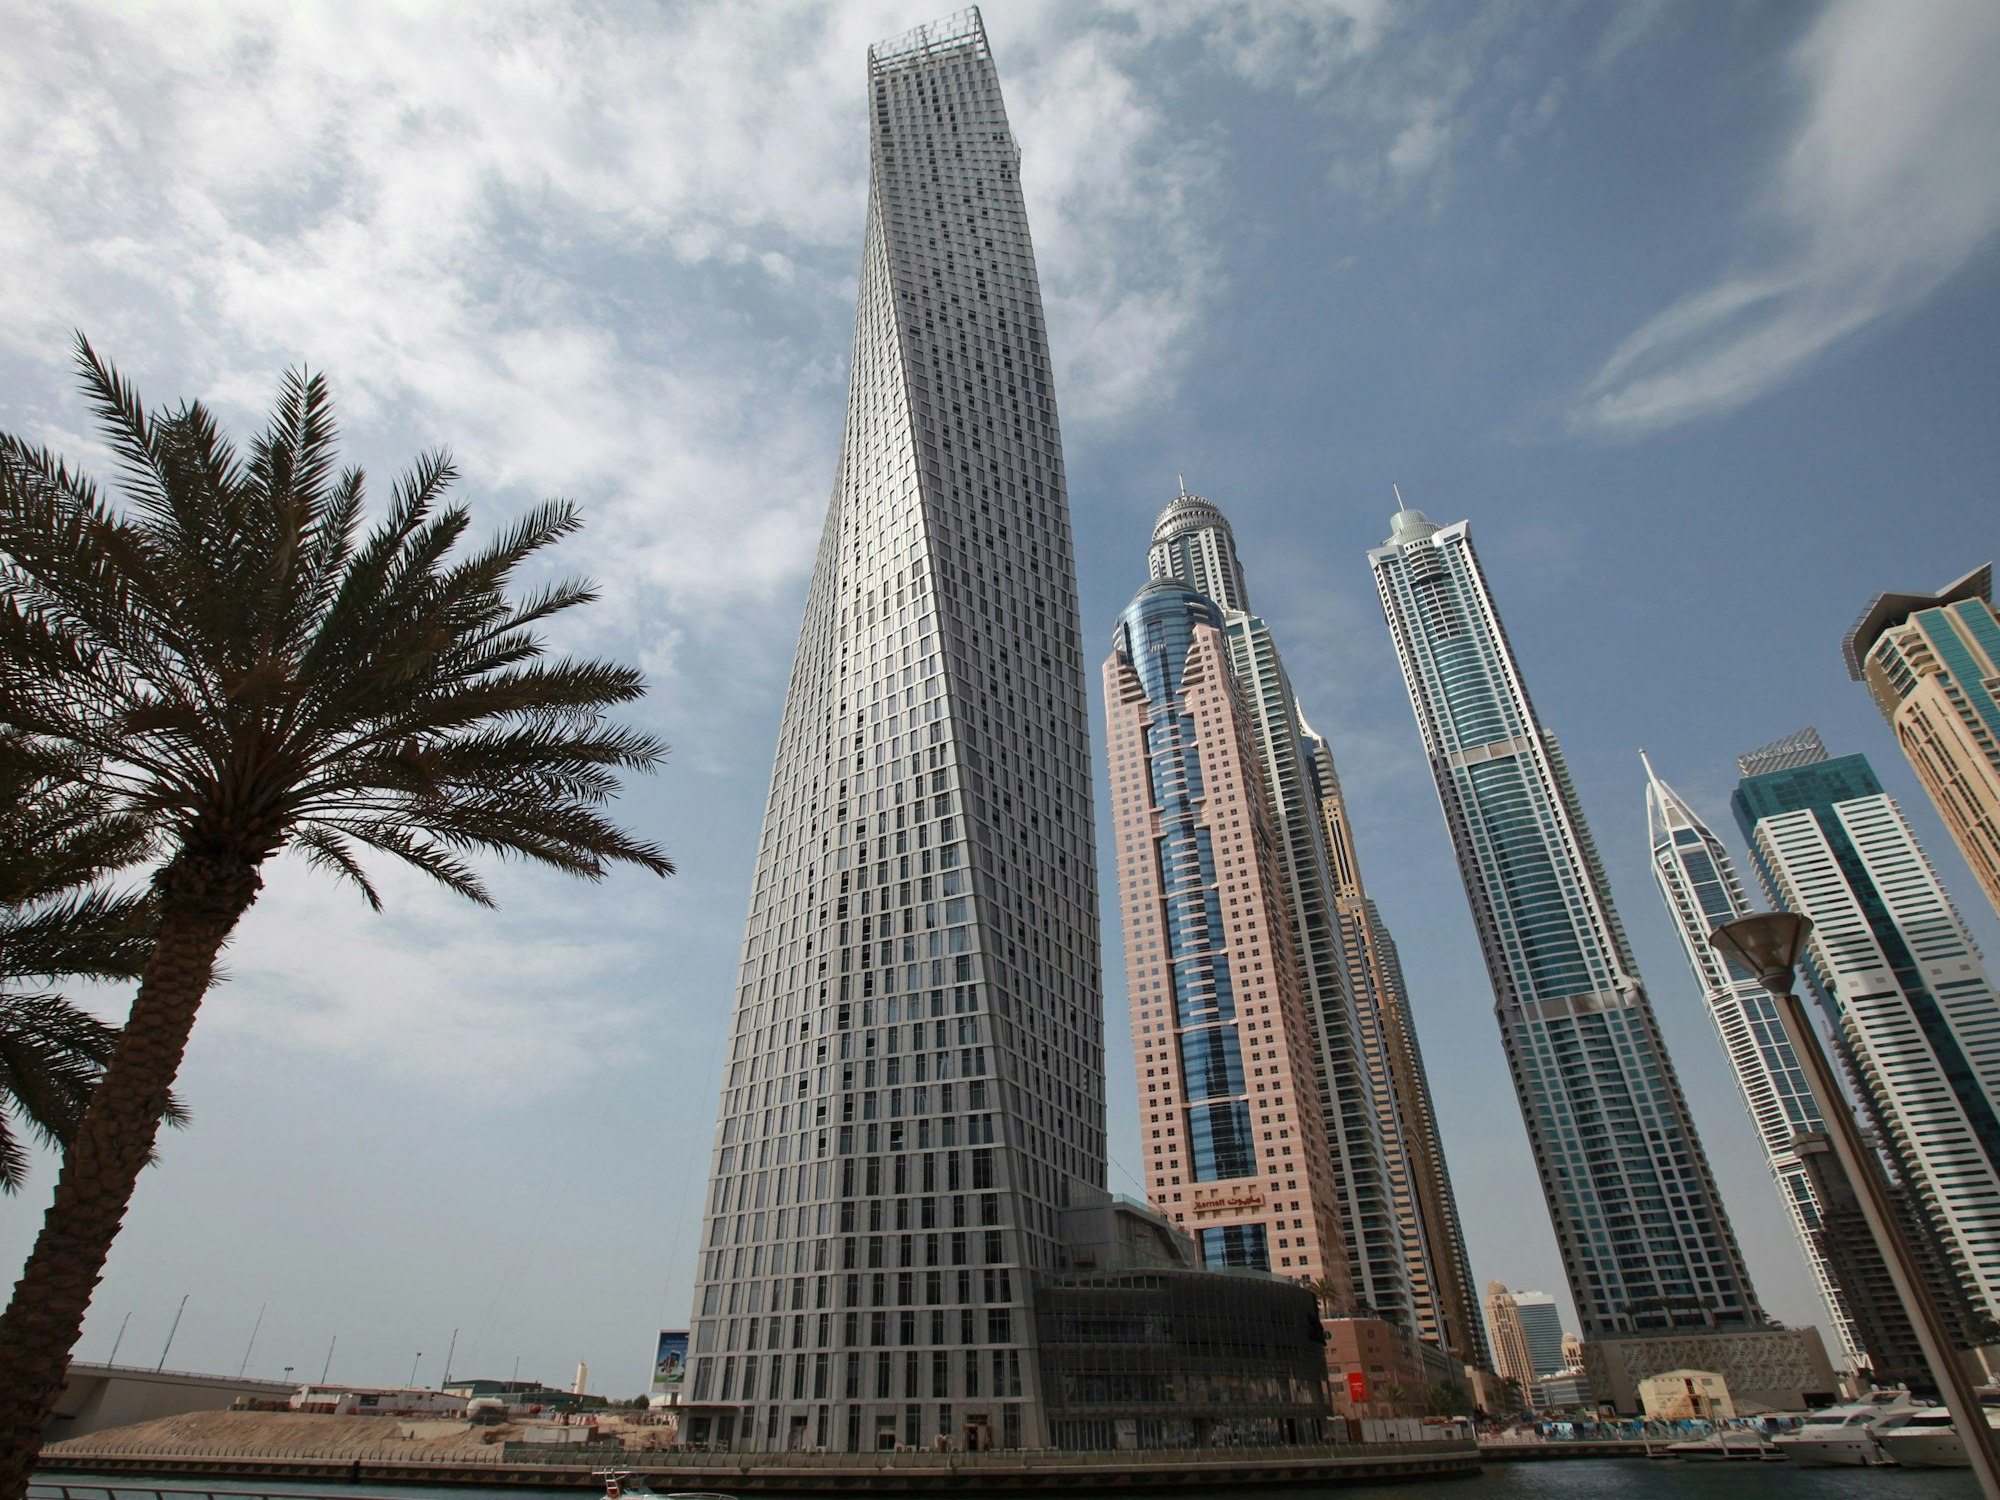 Blick auf Hochhäuser in Dubai. Dortwurde der 25-jährige Billy Hood mit Cannabis-Öl erwischt.